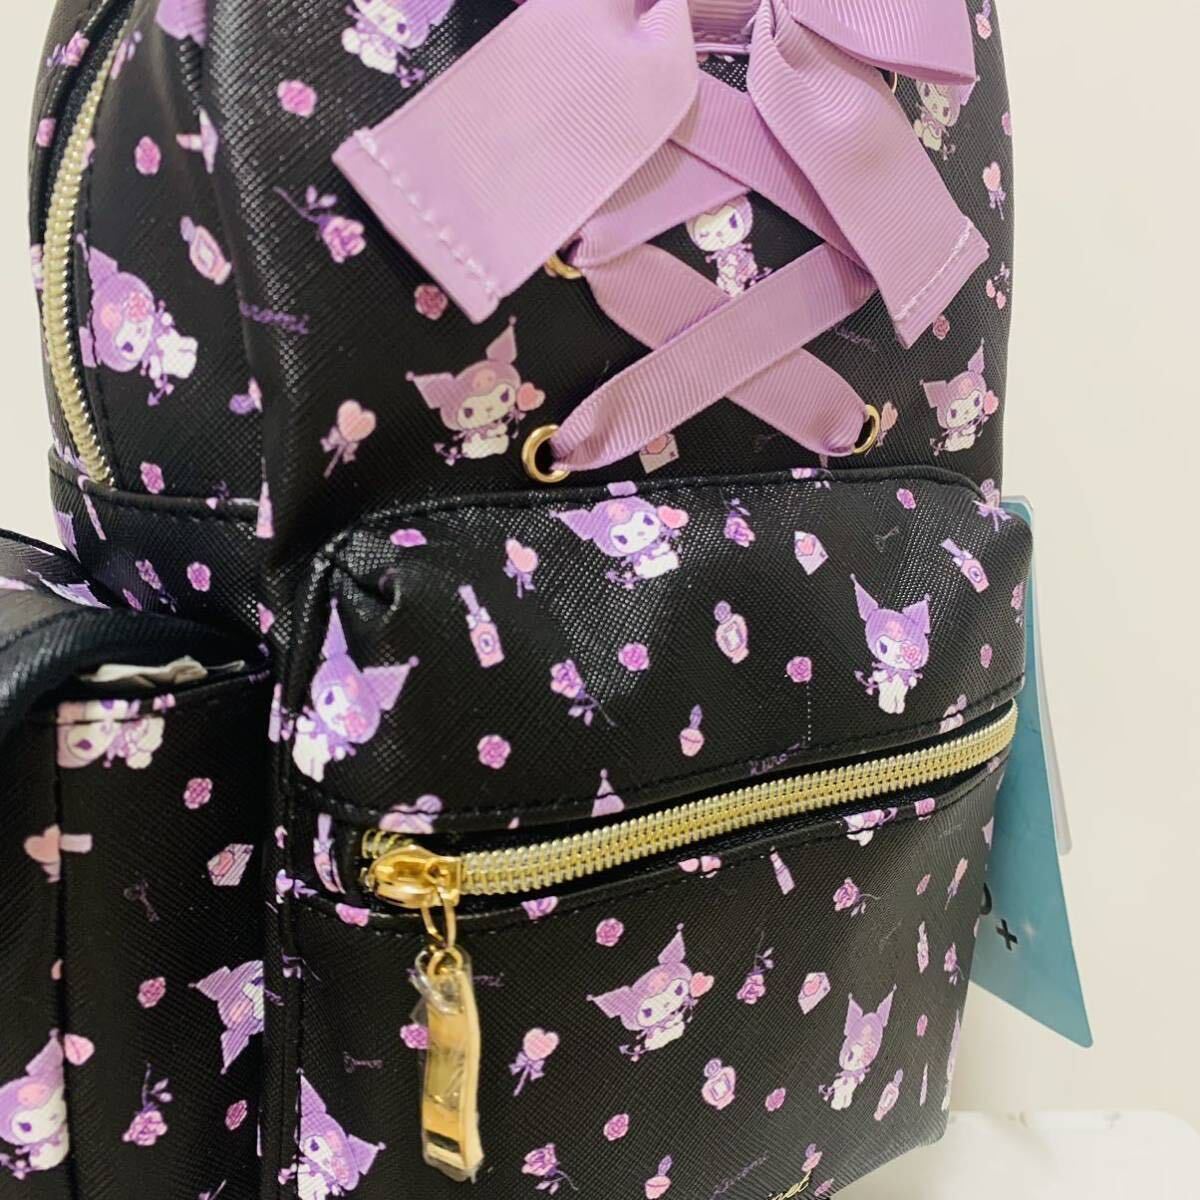  новый товар черный mi чёрный корпус сумка сумка сумка на плечо ученик начальной школы ученик неполной средней школы ученик старшей школы женский 